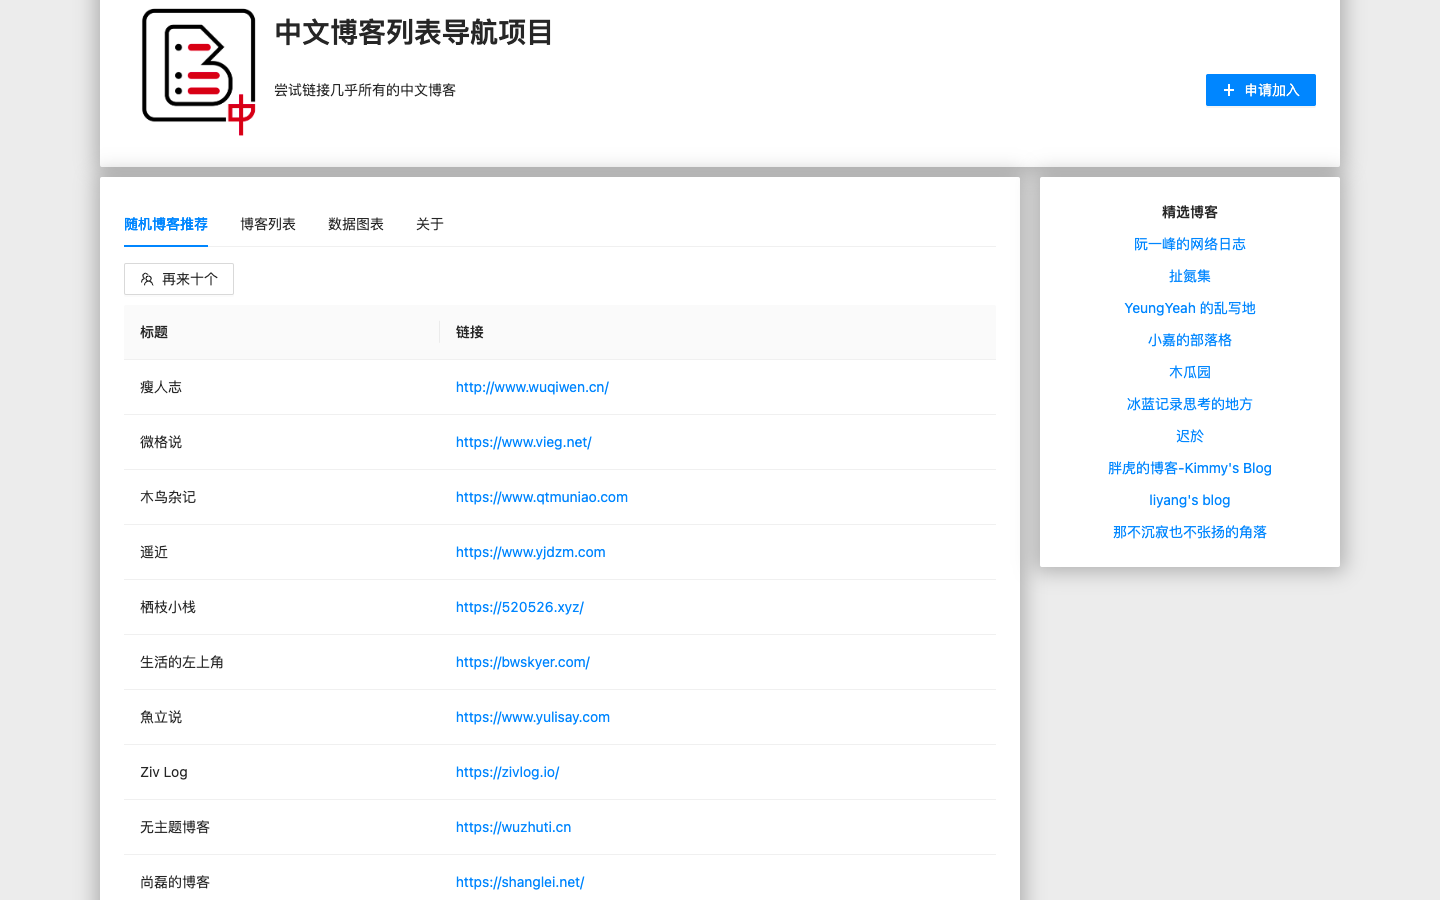 中文博客列表导航项目